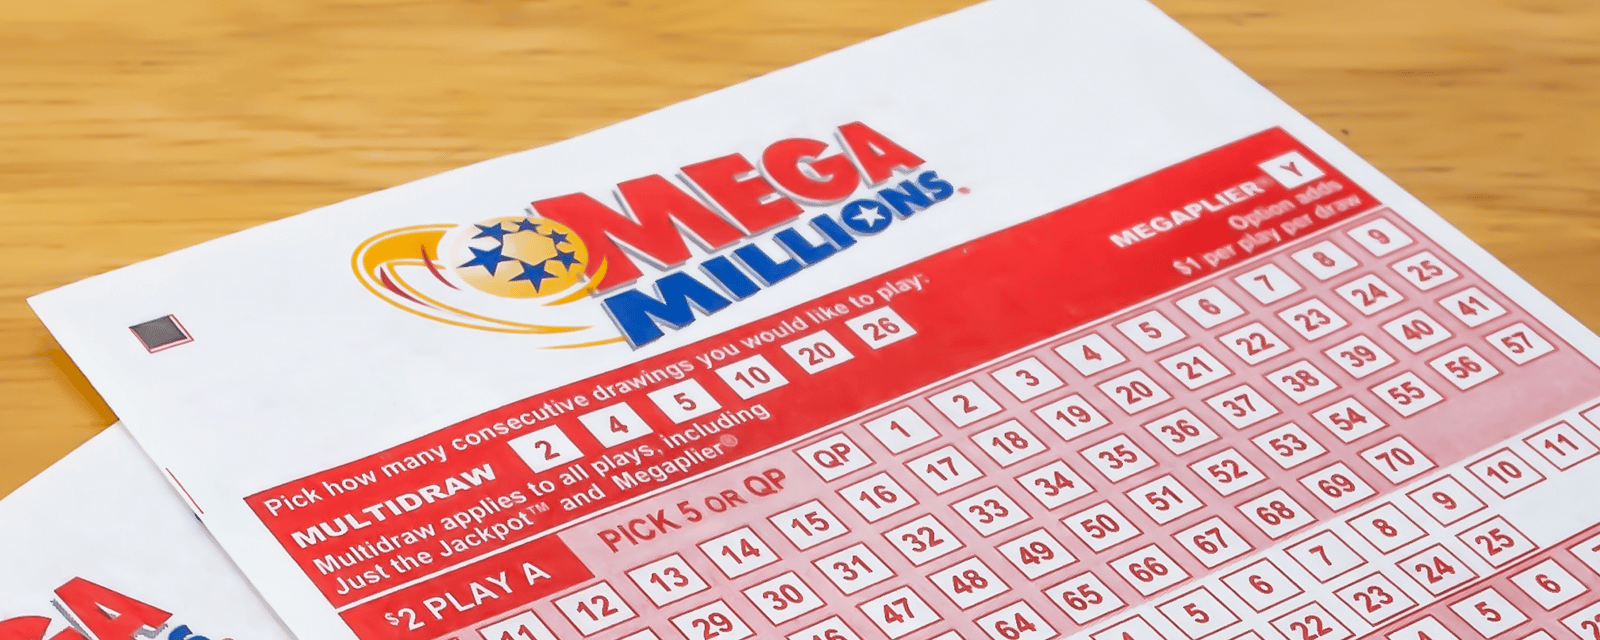 Un individu remporte plus d'un milliard de dollars à la loterie